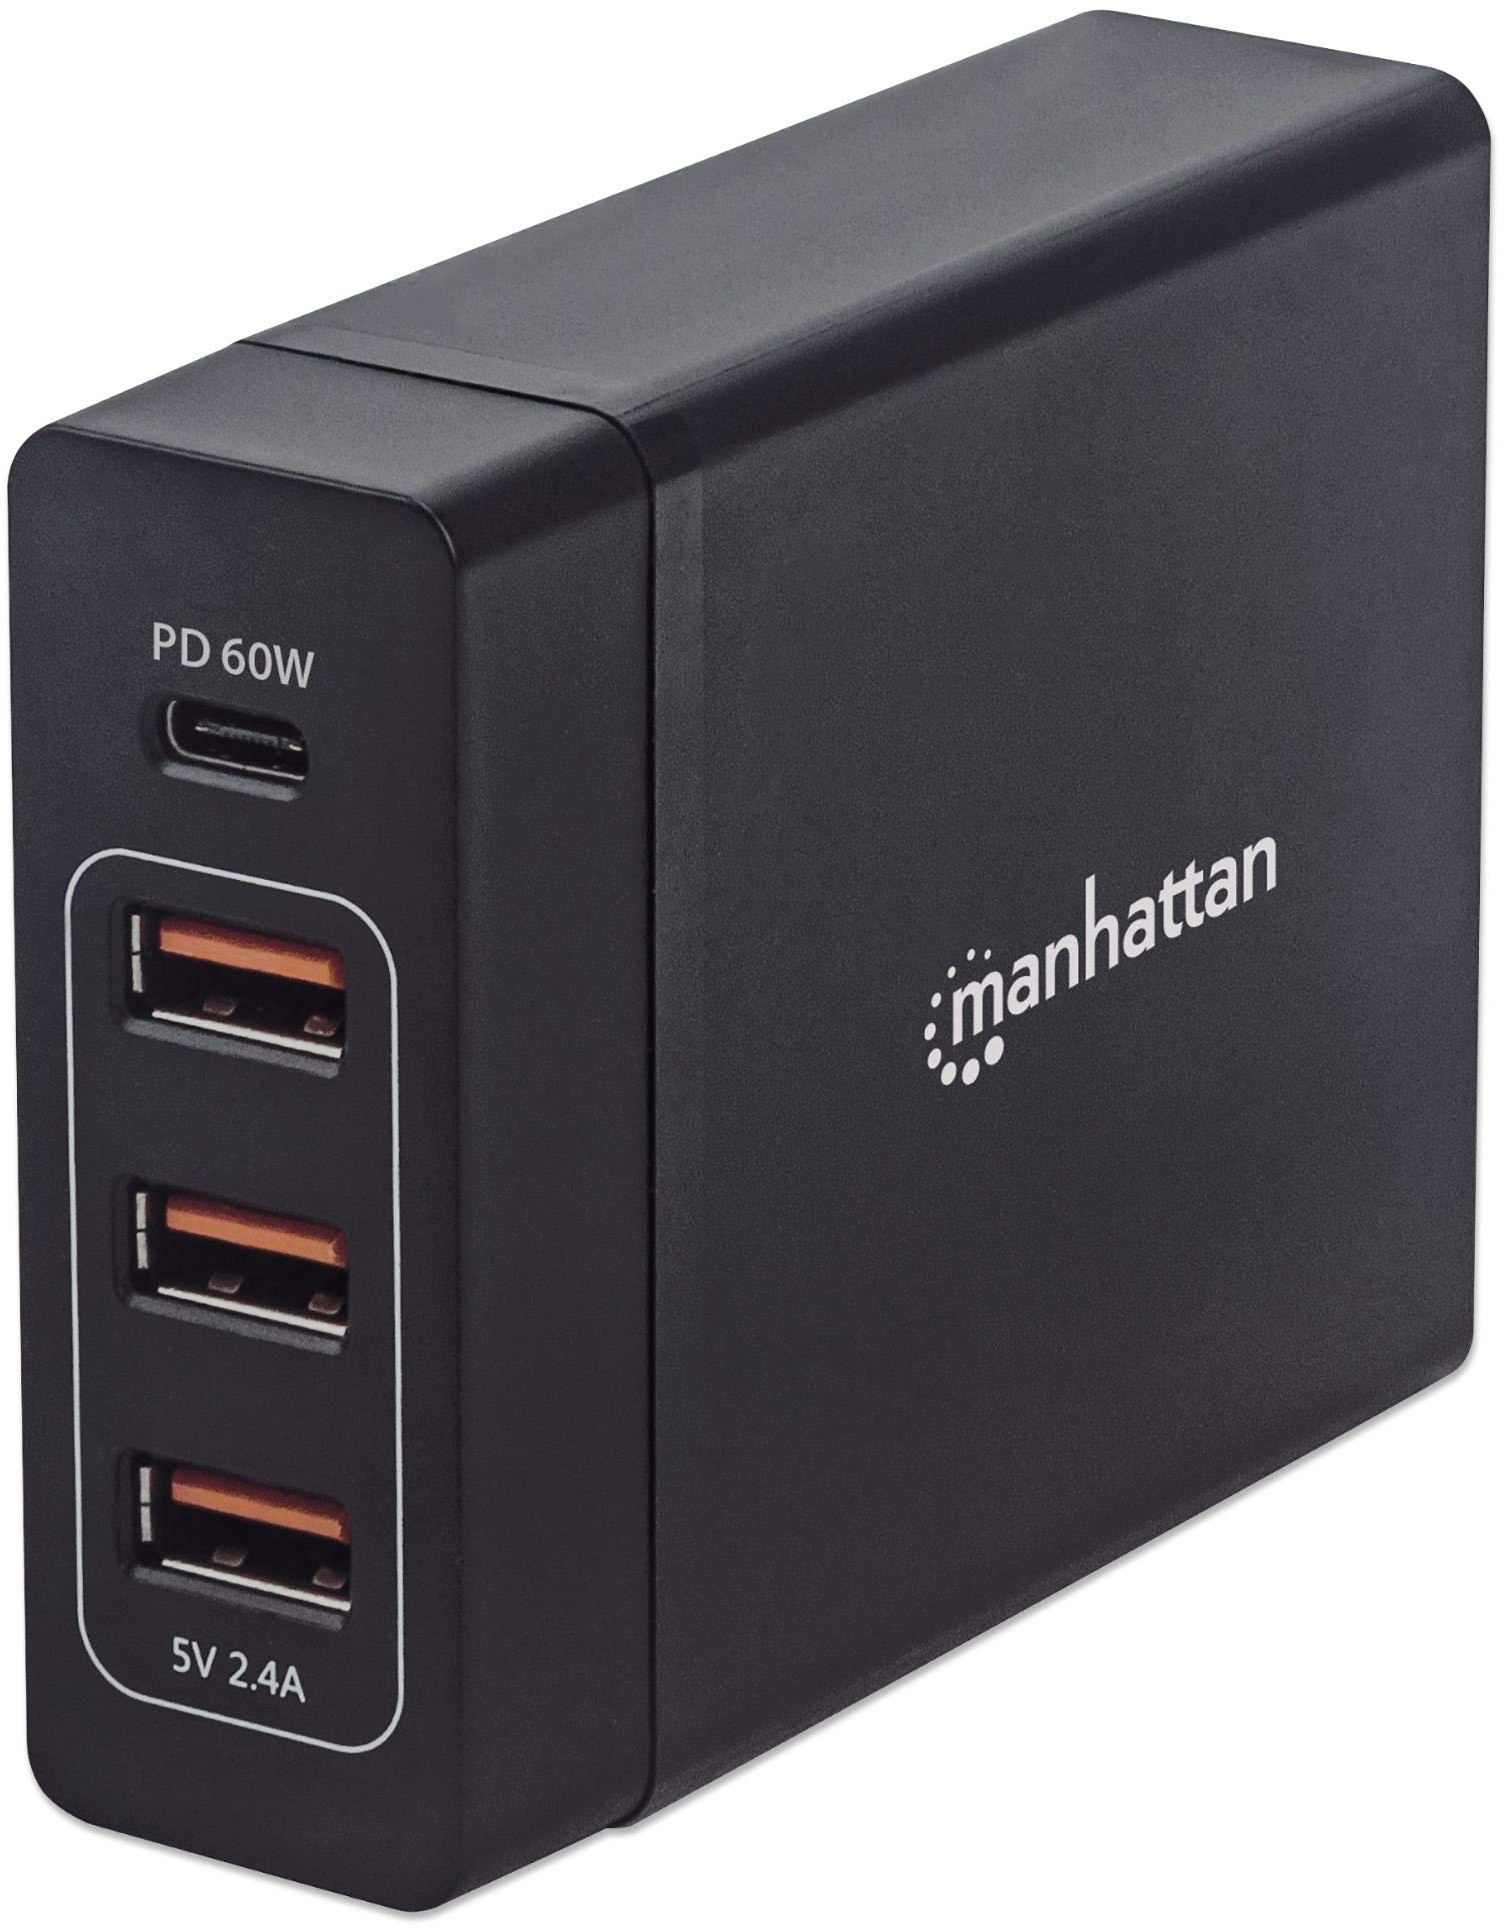 Manhattan 102124 Power Delivery Ladestation – 72 W Ladegerät mit einem USB-C Power Delivery-Port mit bis zu 60 W, DREI USB-A-Ladeports mit bis zu 12 W/ 2, 4 A, Schwarz